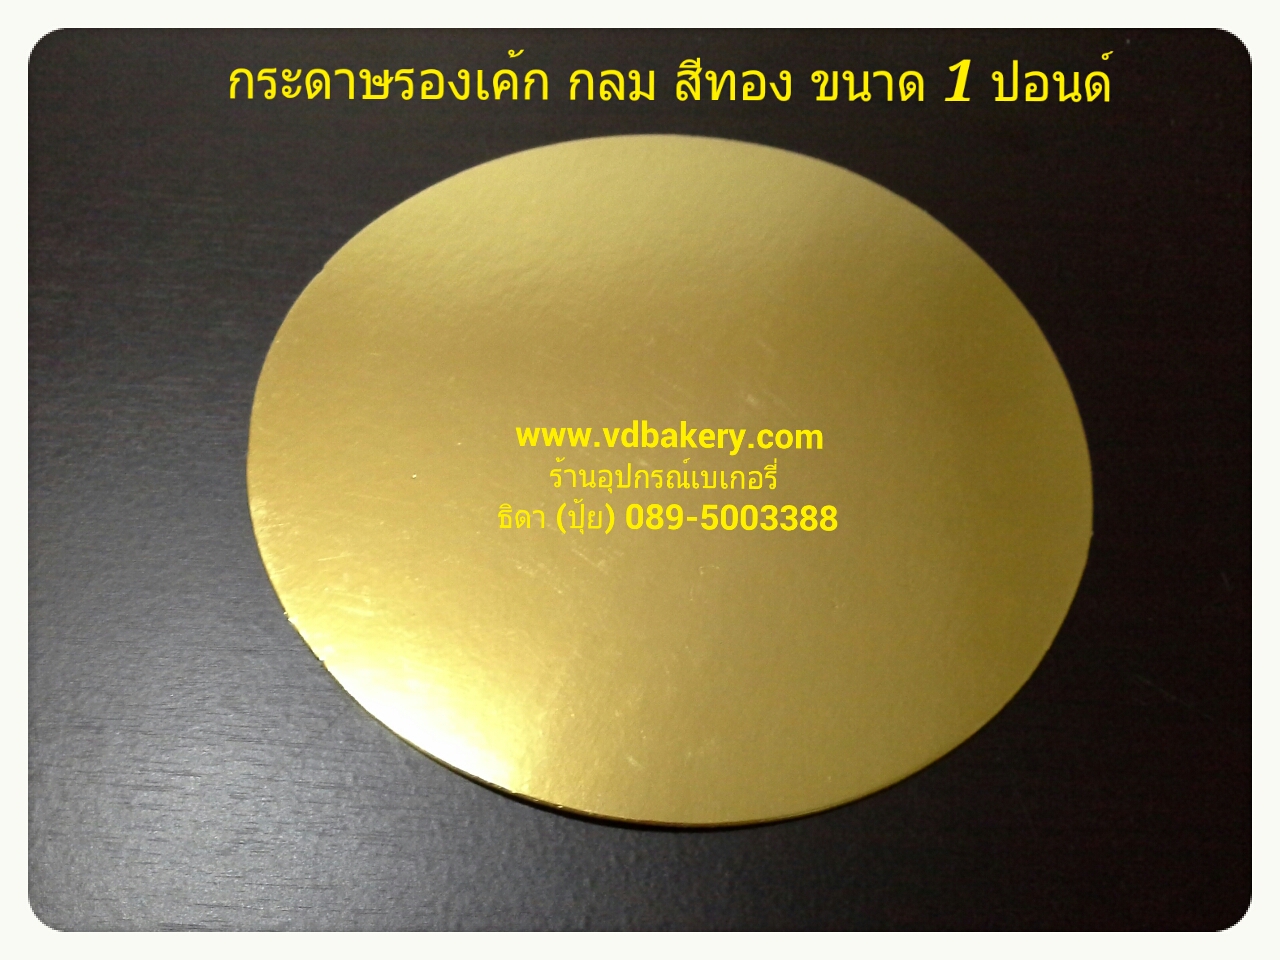 (61097) กระดาษรองเค้กสีทอง กลม ขนาด 1 ปอนด์ (20 แผ่น/แพค)